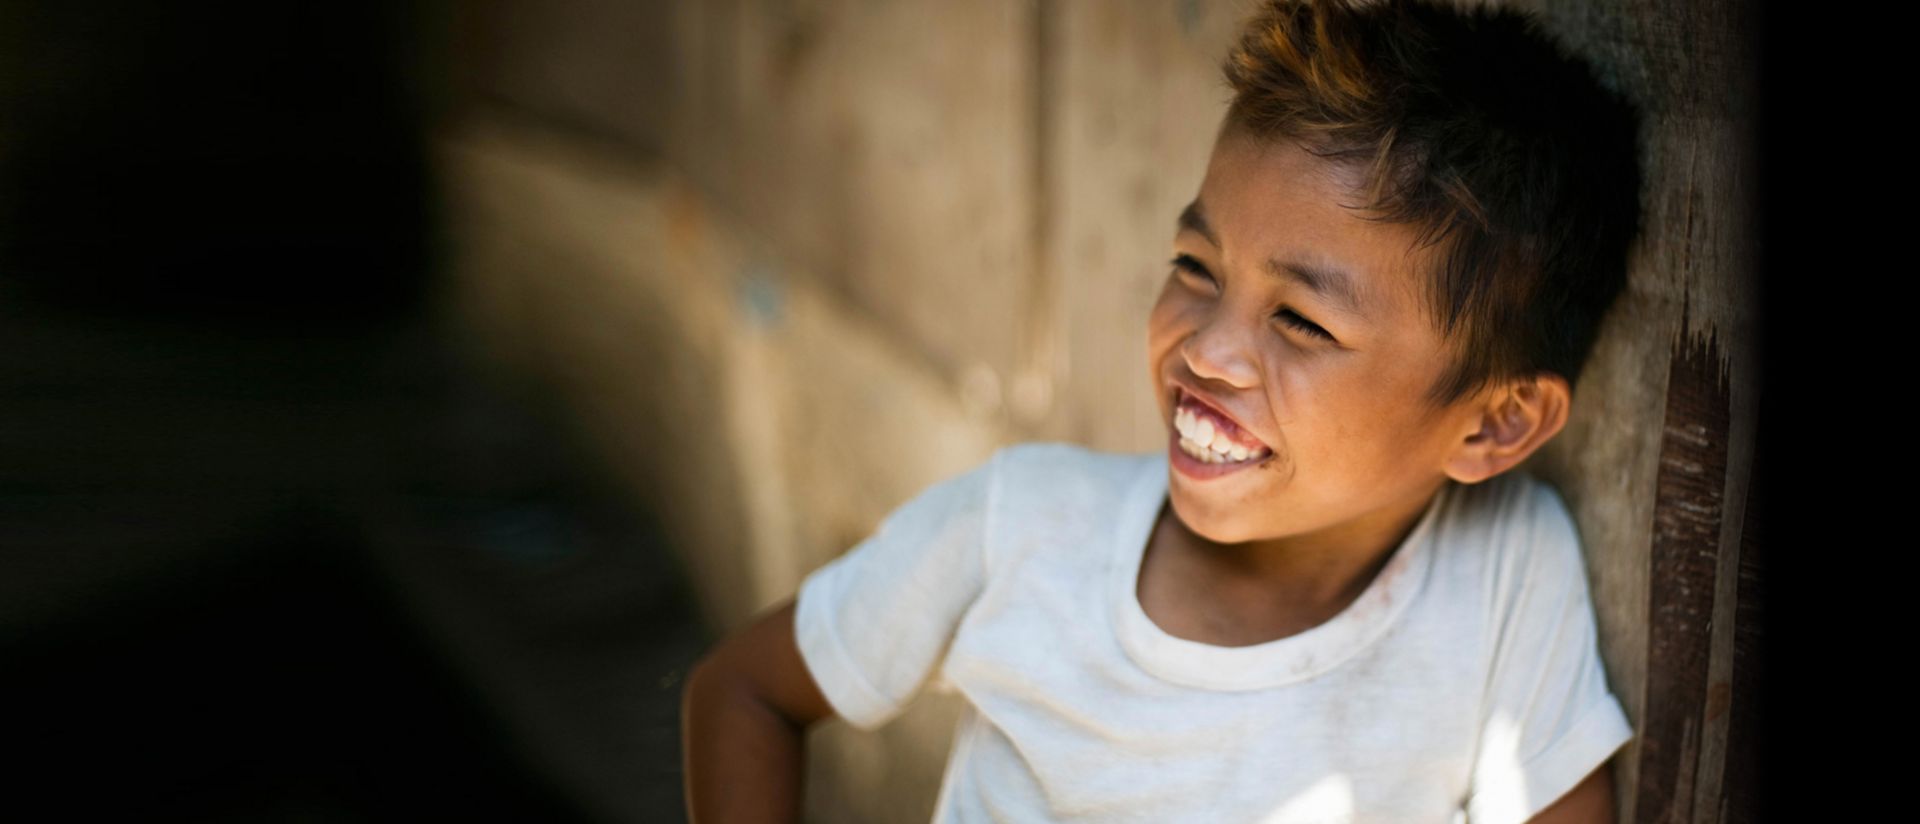 uśmiechnięty chłopiec oparty o ścianę stajni